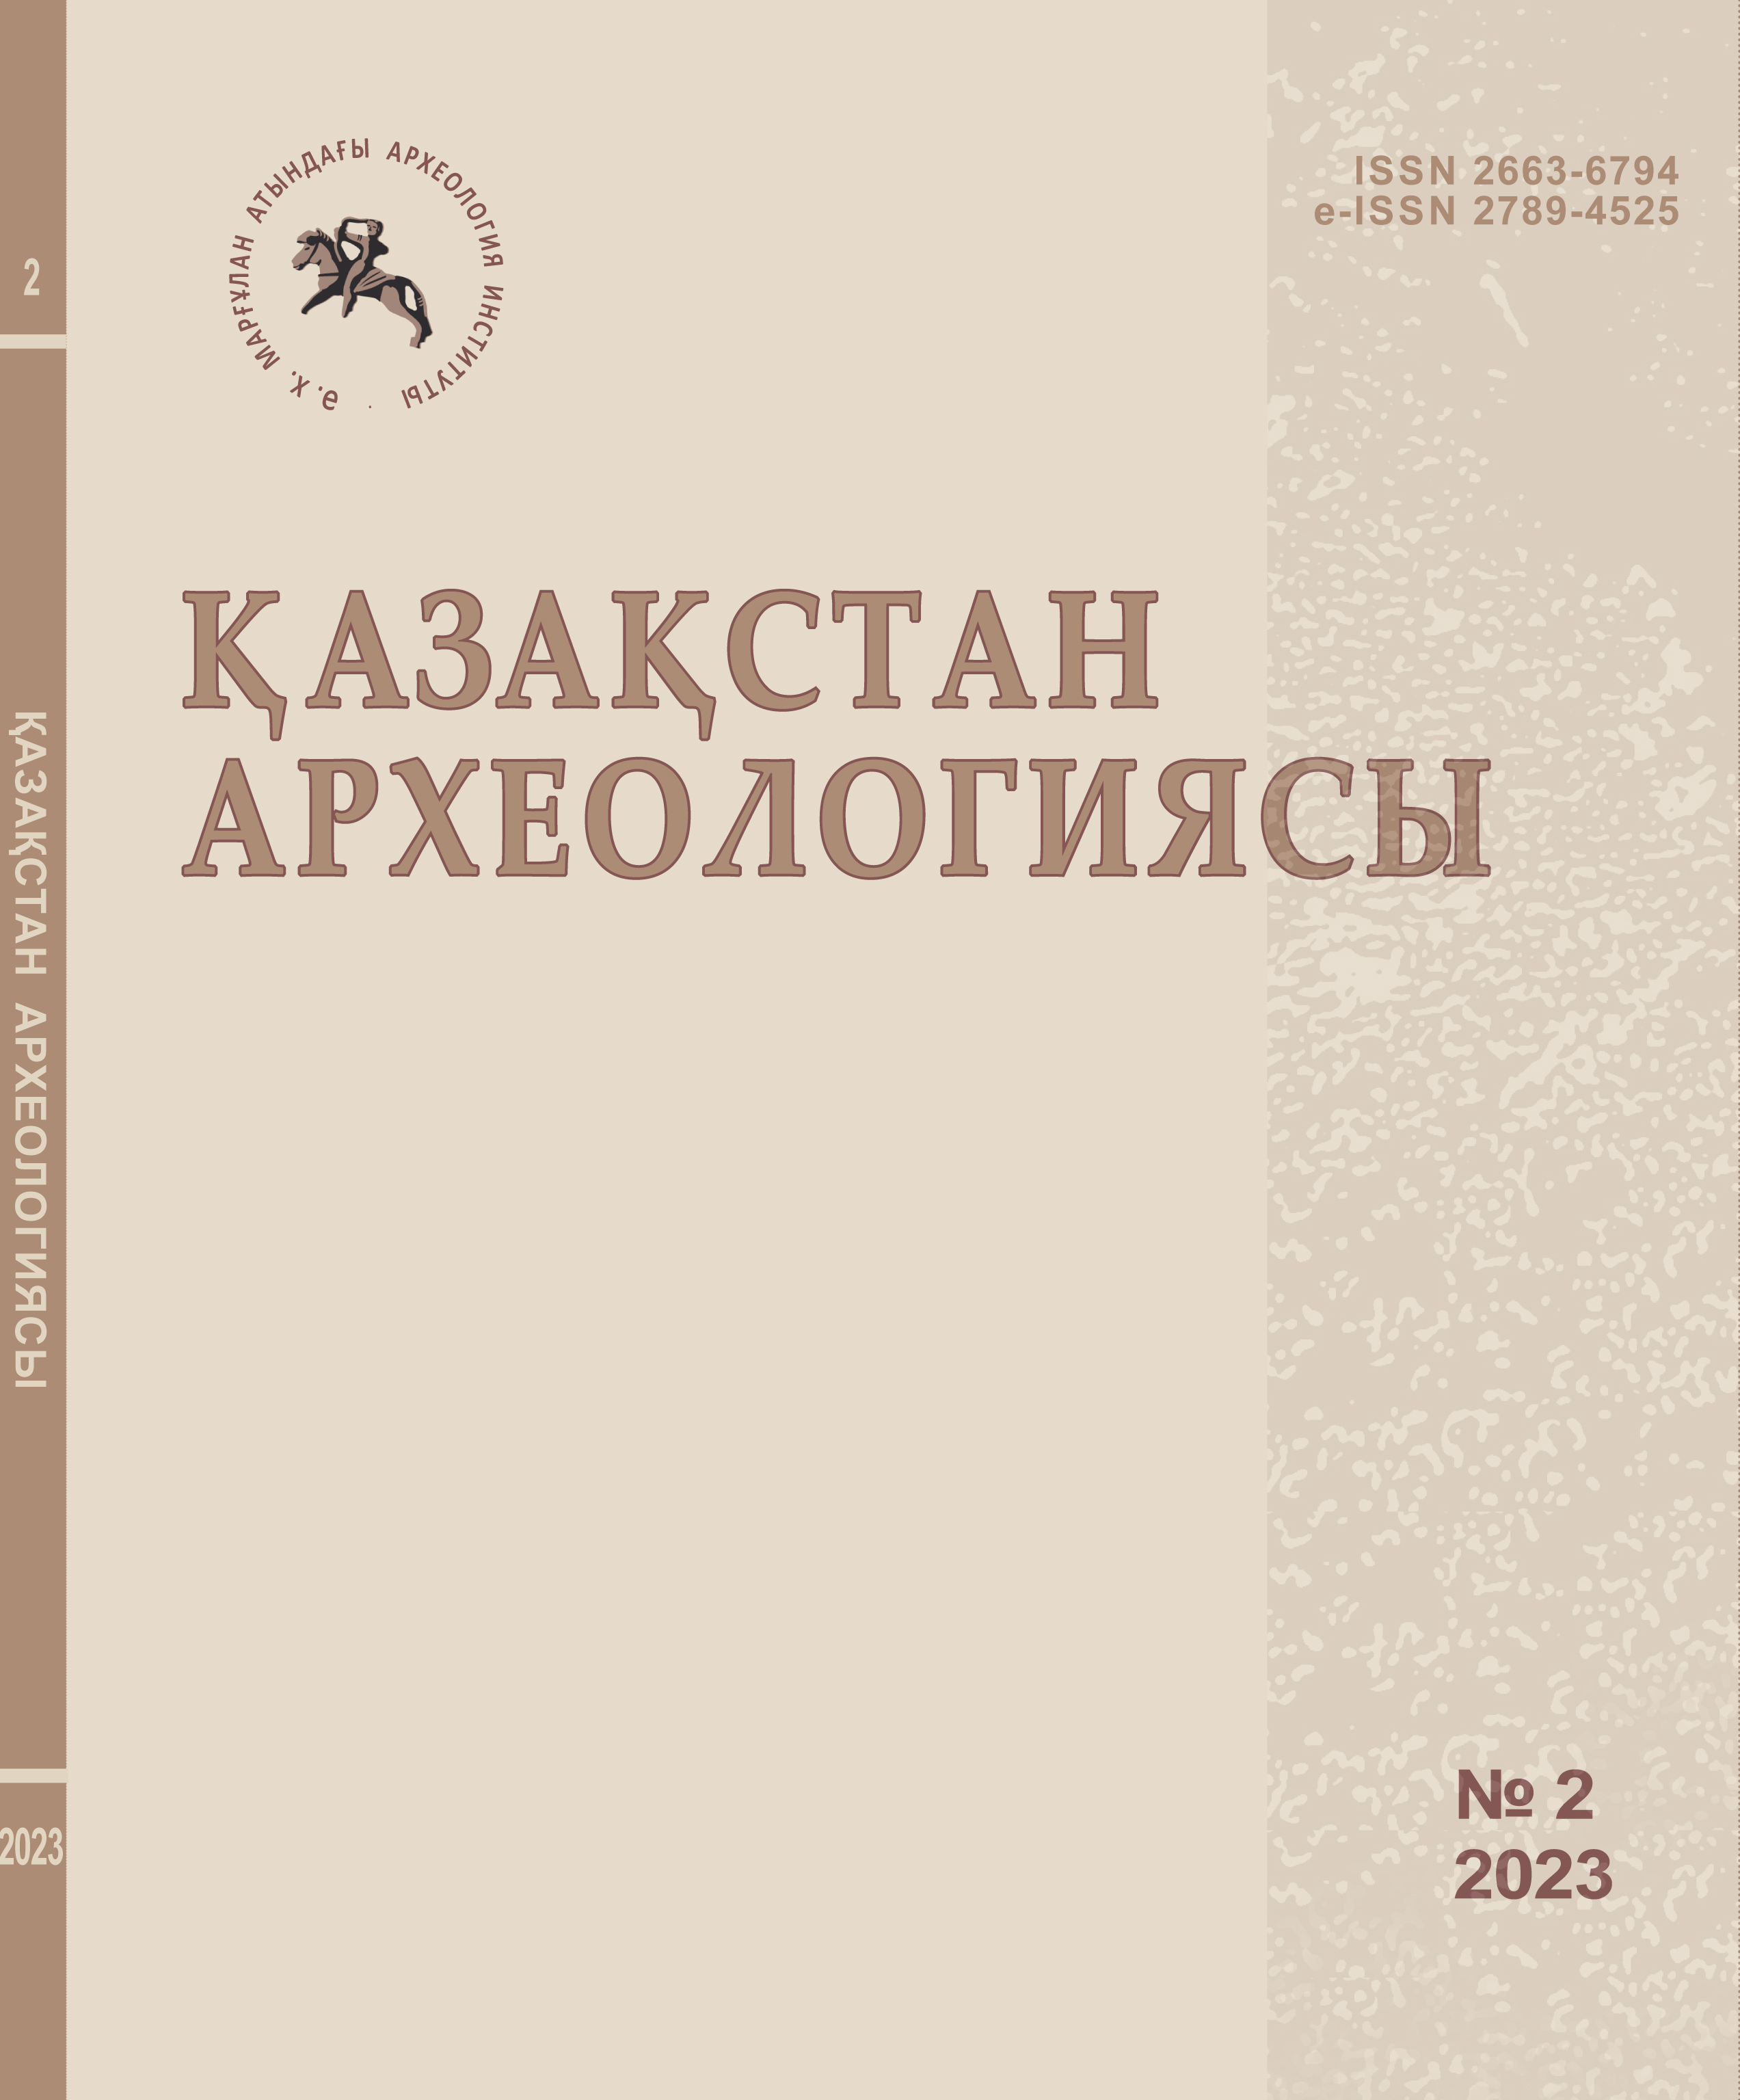 					Показать № 2 (20) (2023): Археология Казахстана
				